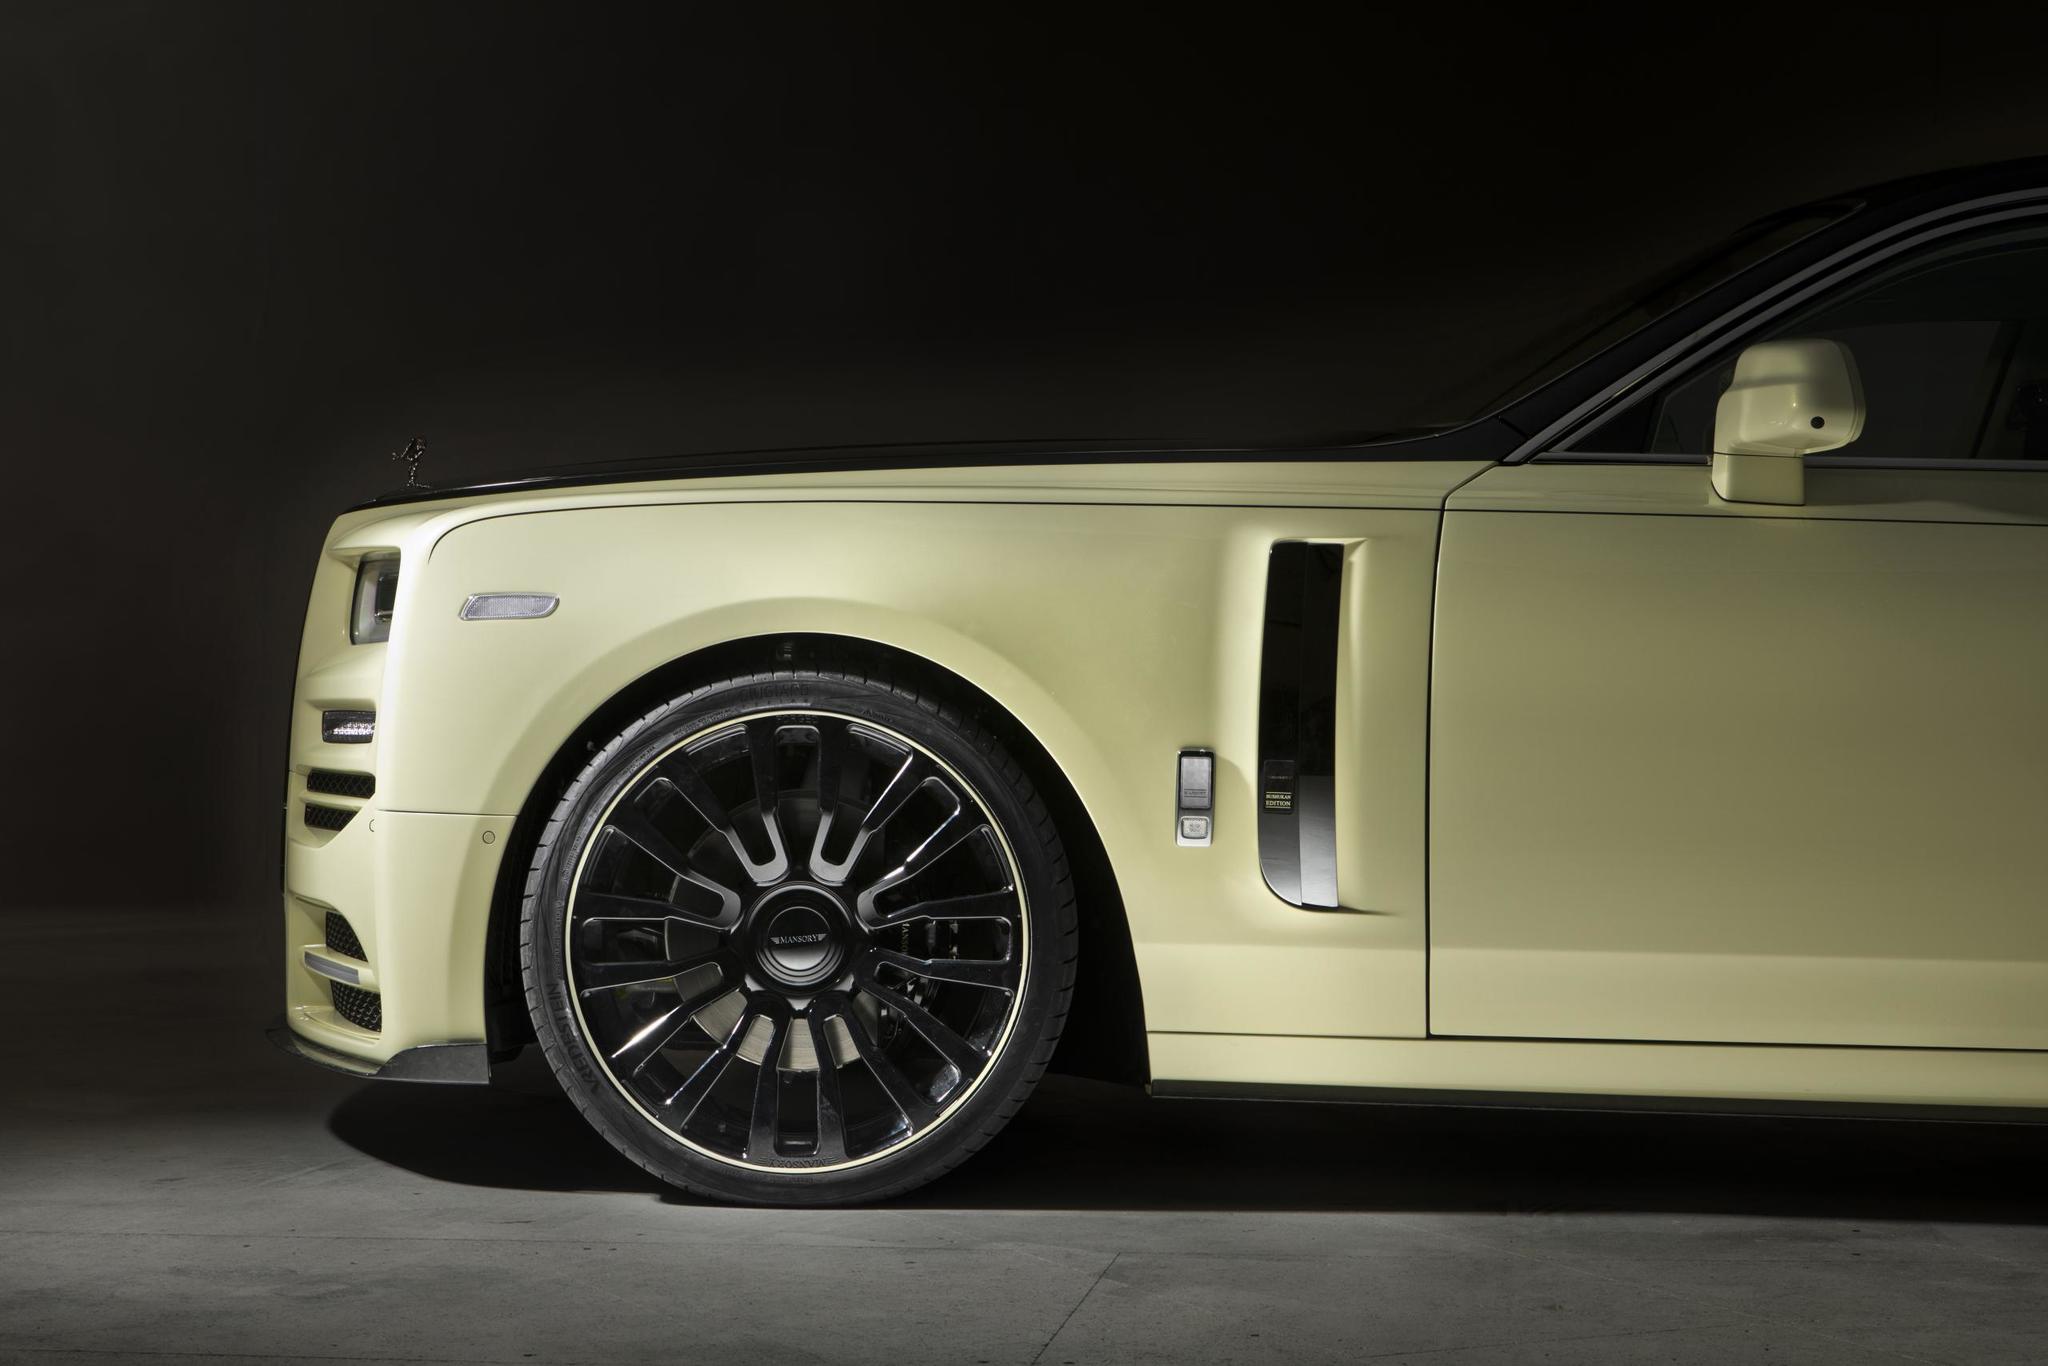 Mansory body kit for Rolls-Royce Phantom latest model